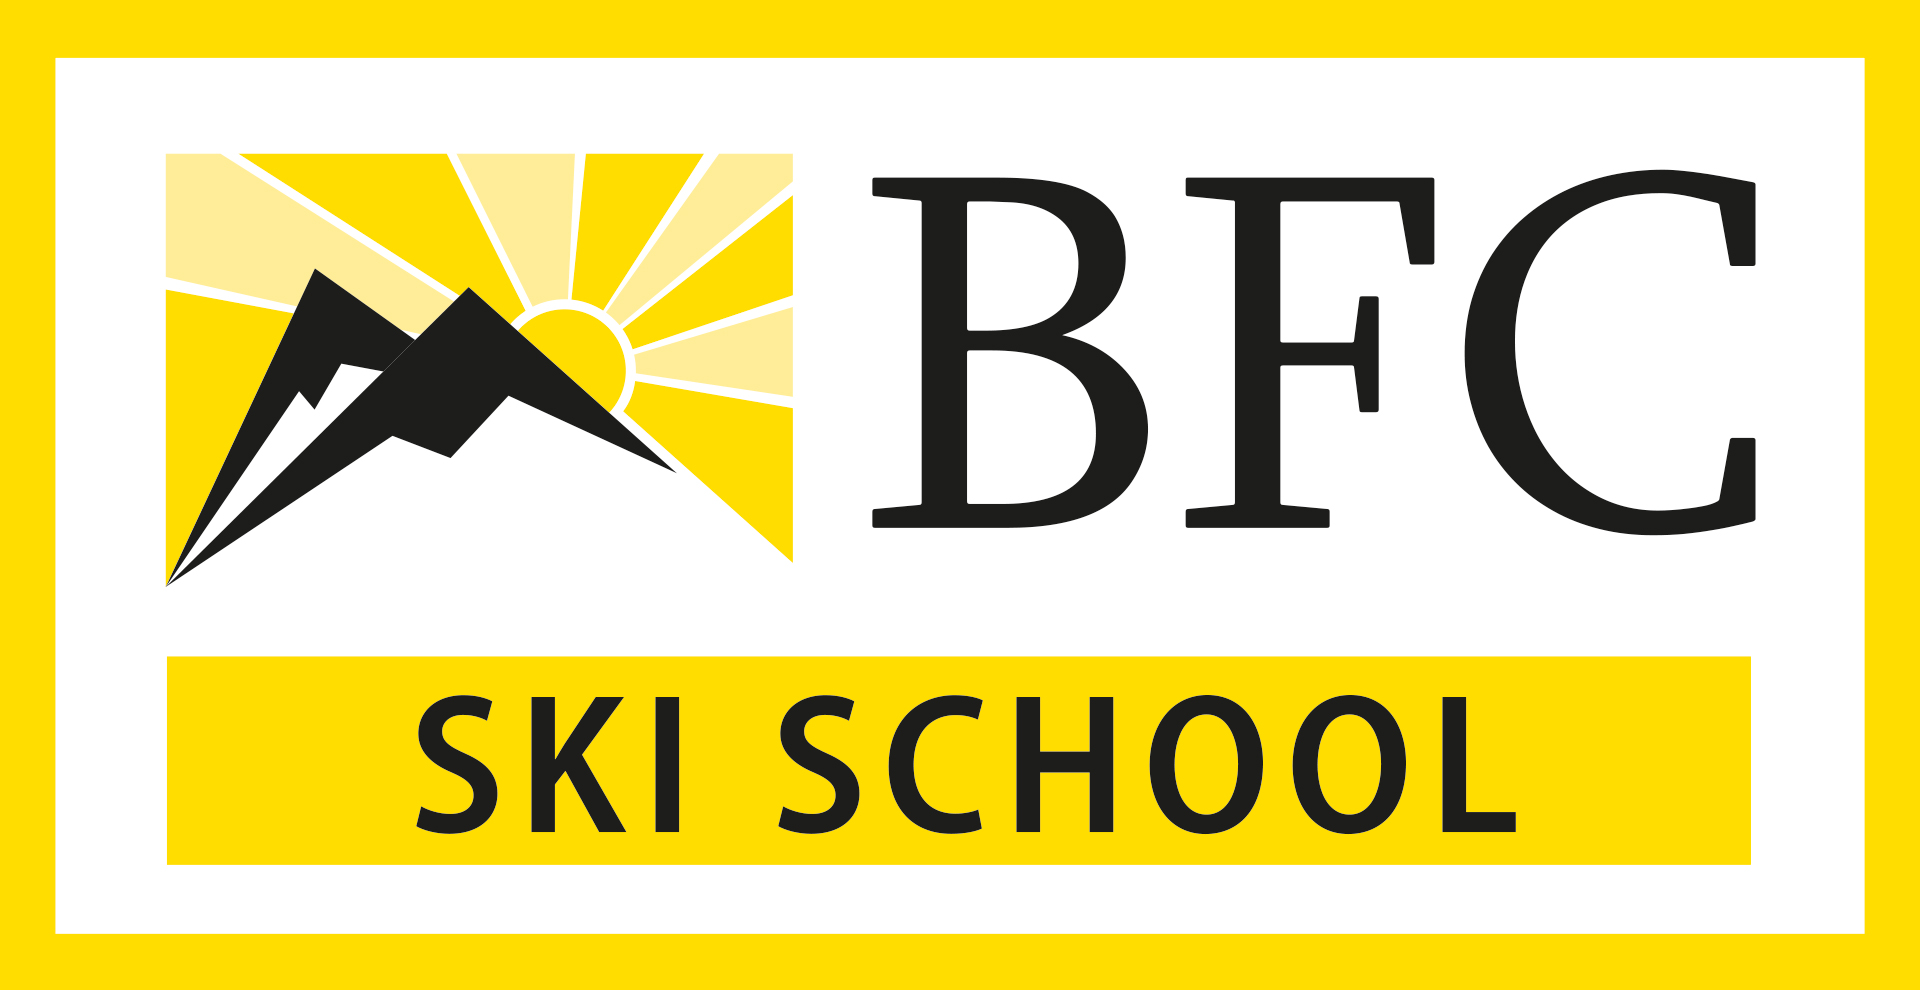 BFC Ski School